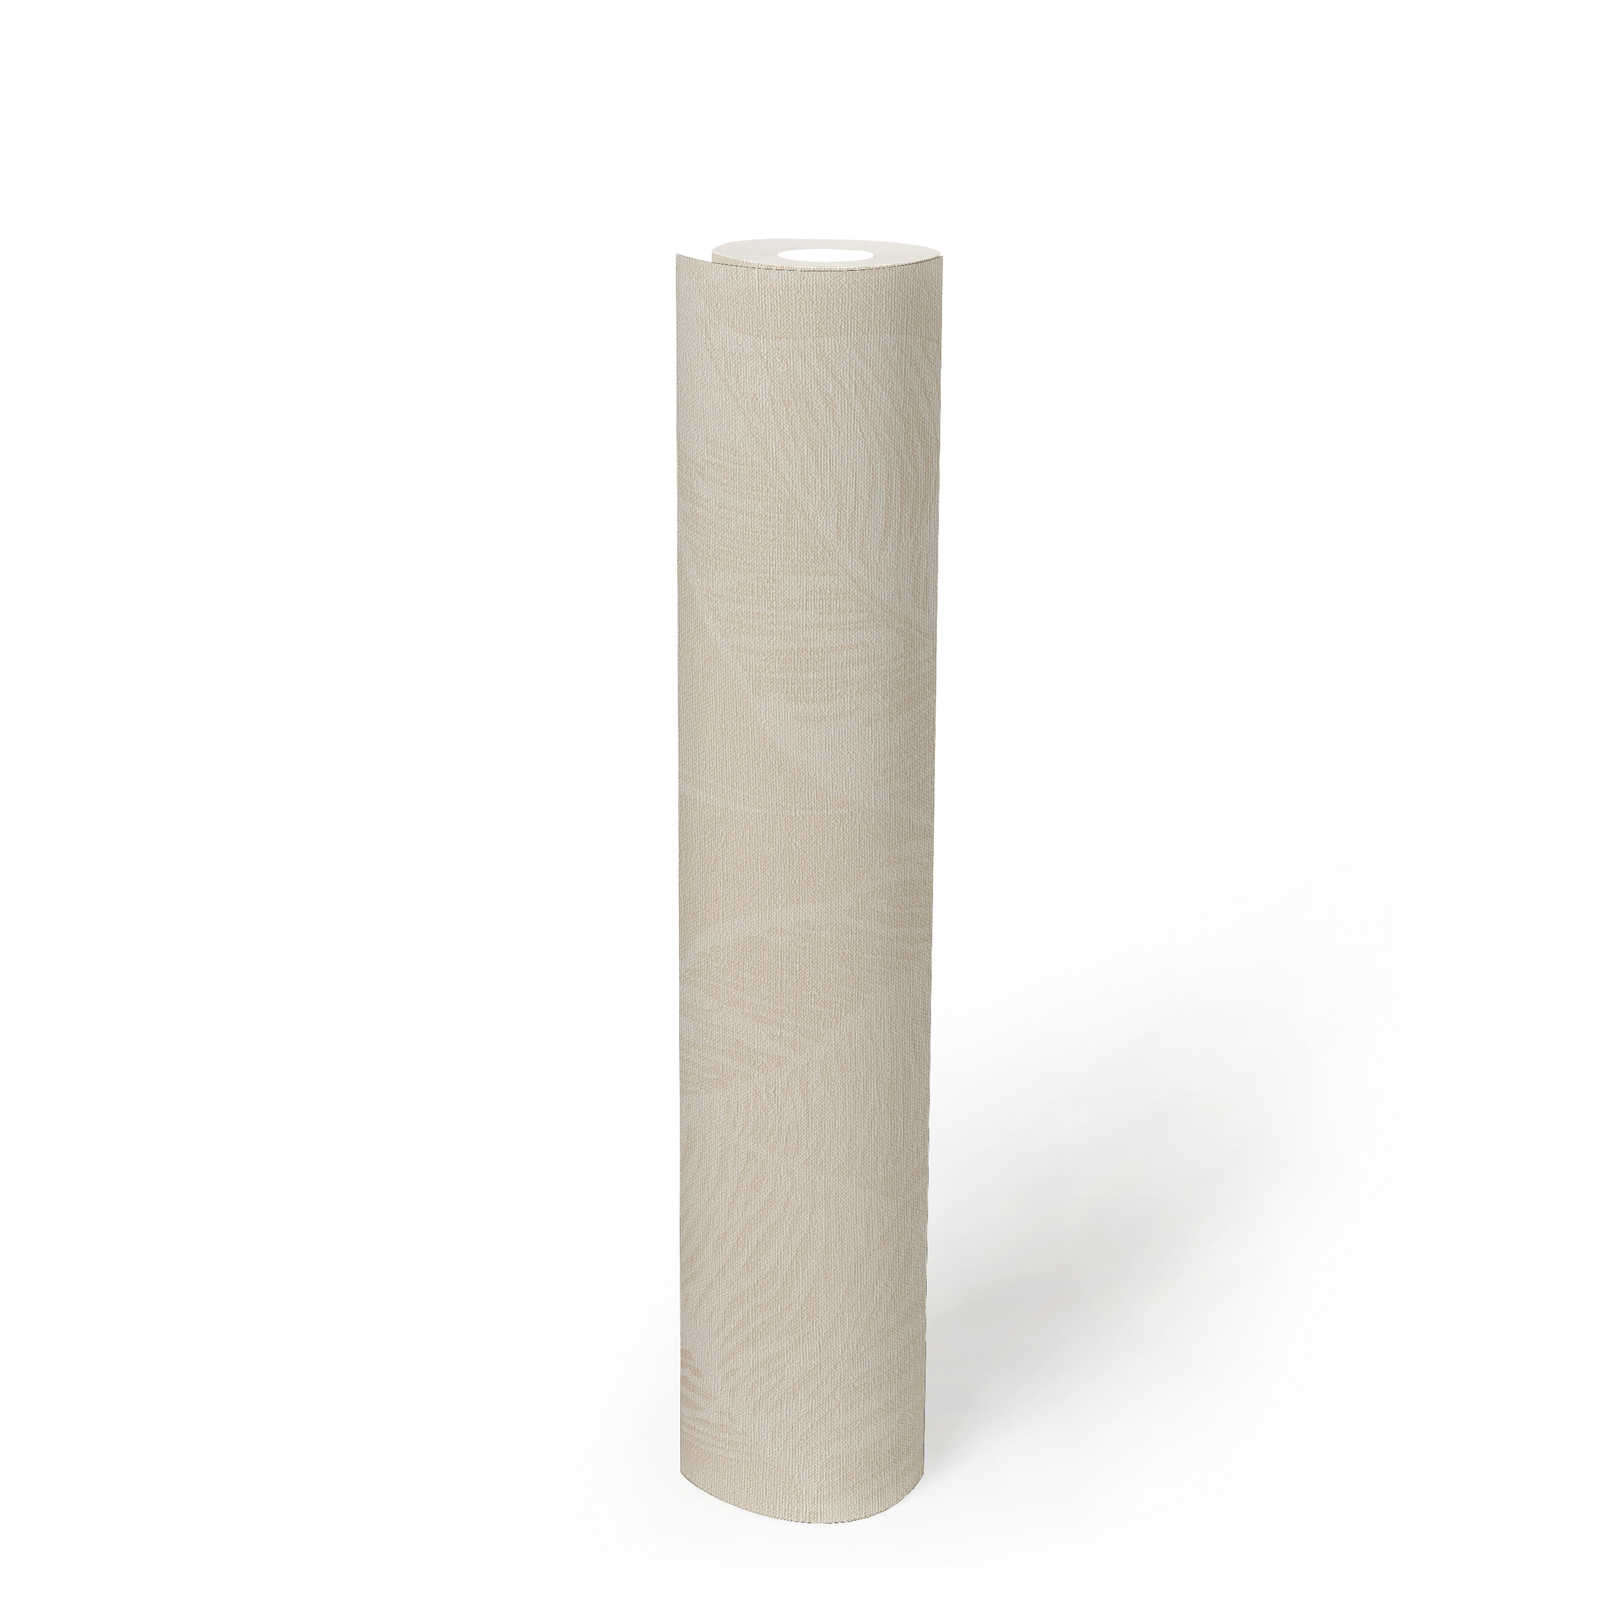             Blättermuster Vliestapete PVC-frei – Beige, Weiß
        